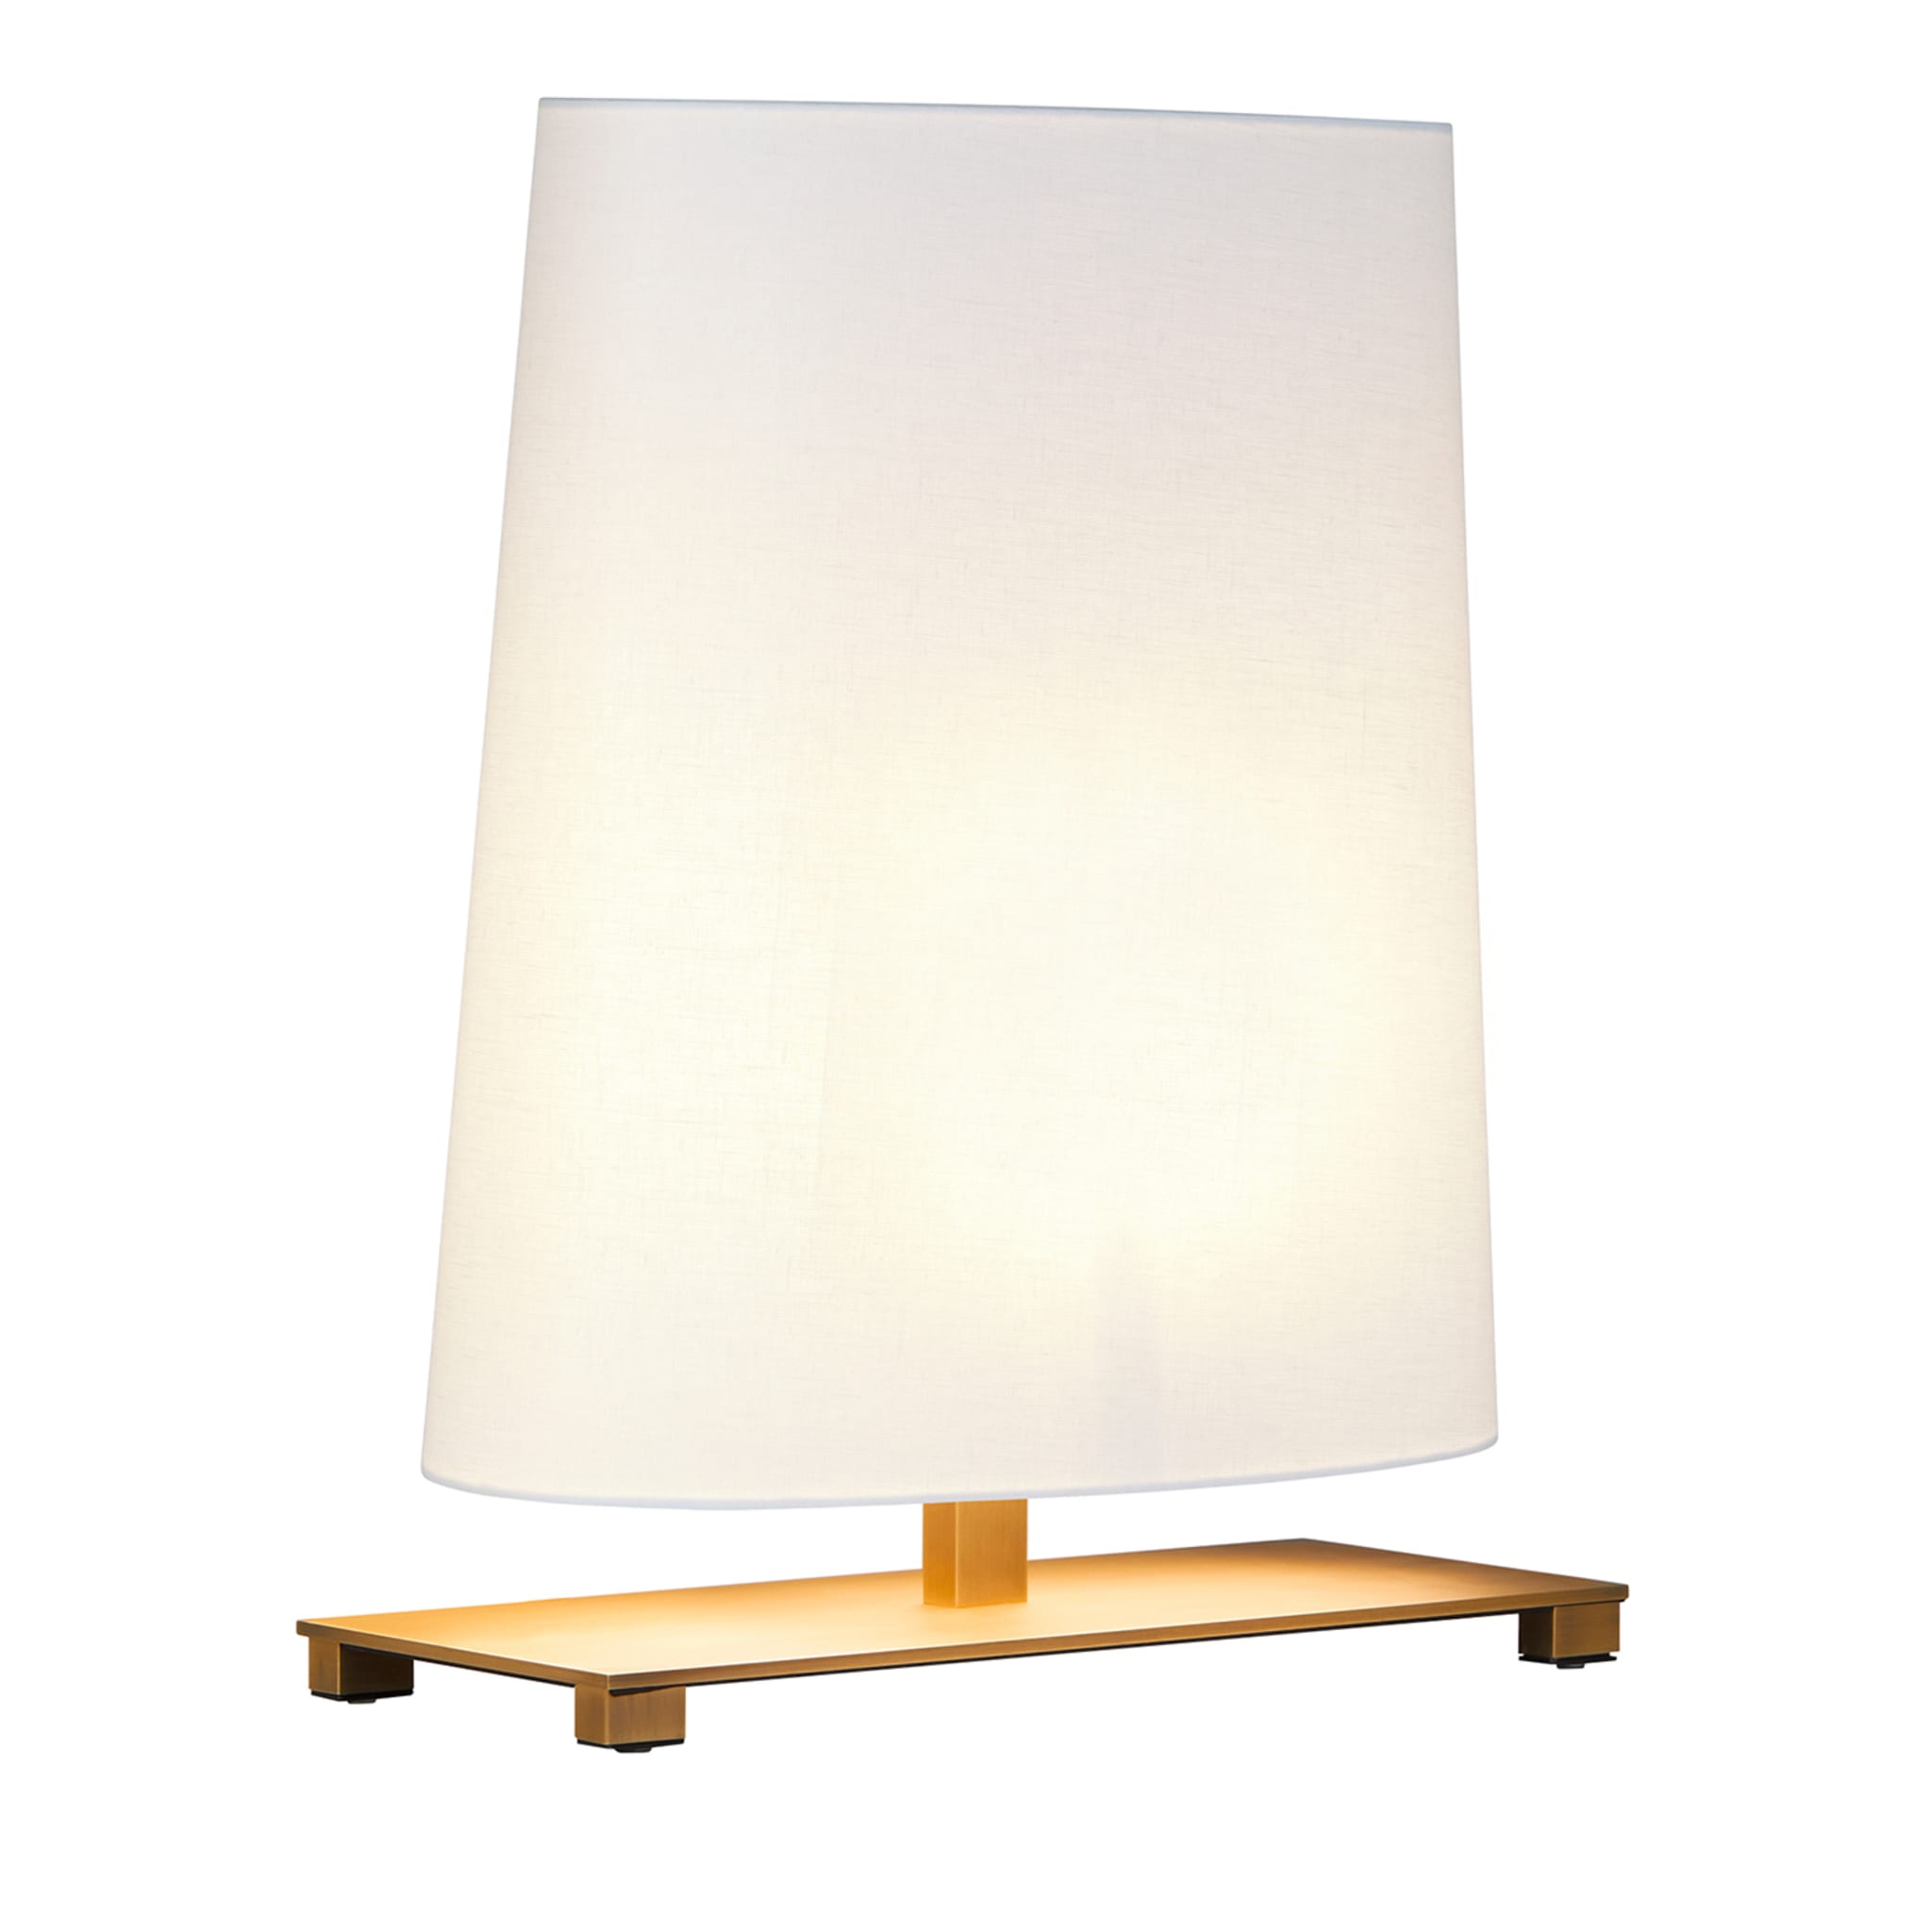 Pequeña lámpara de mesa ovalada en bronce cepillado con pantalla de algodón blanco - Vista principal